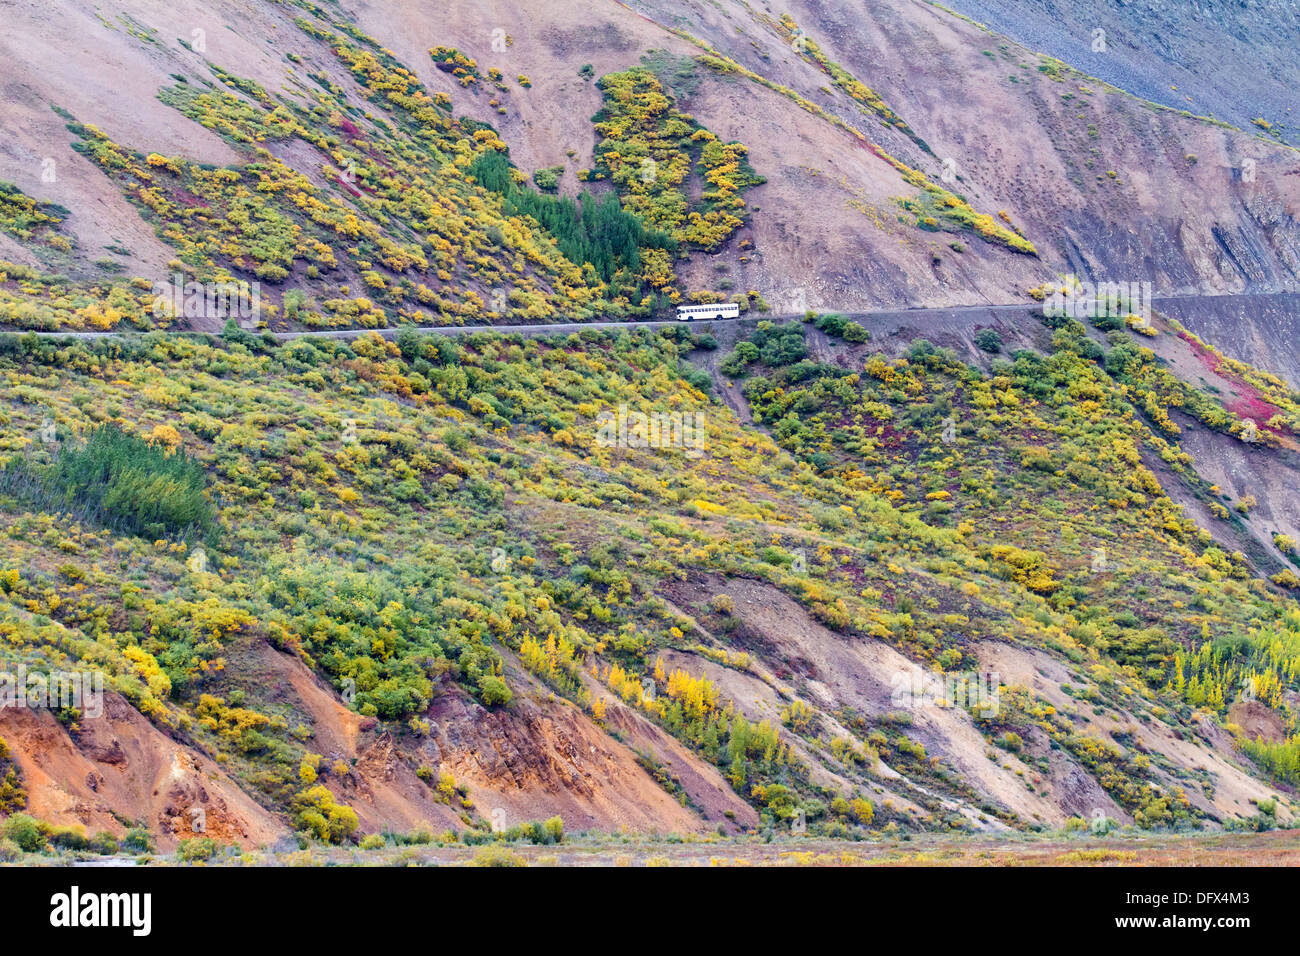 Winding road dans le parc national Denali en Alaska, les couleurs de l'automne flamboyant Banque D'Images